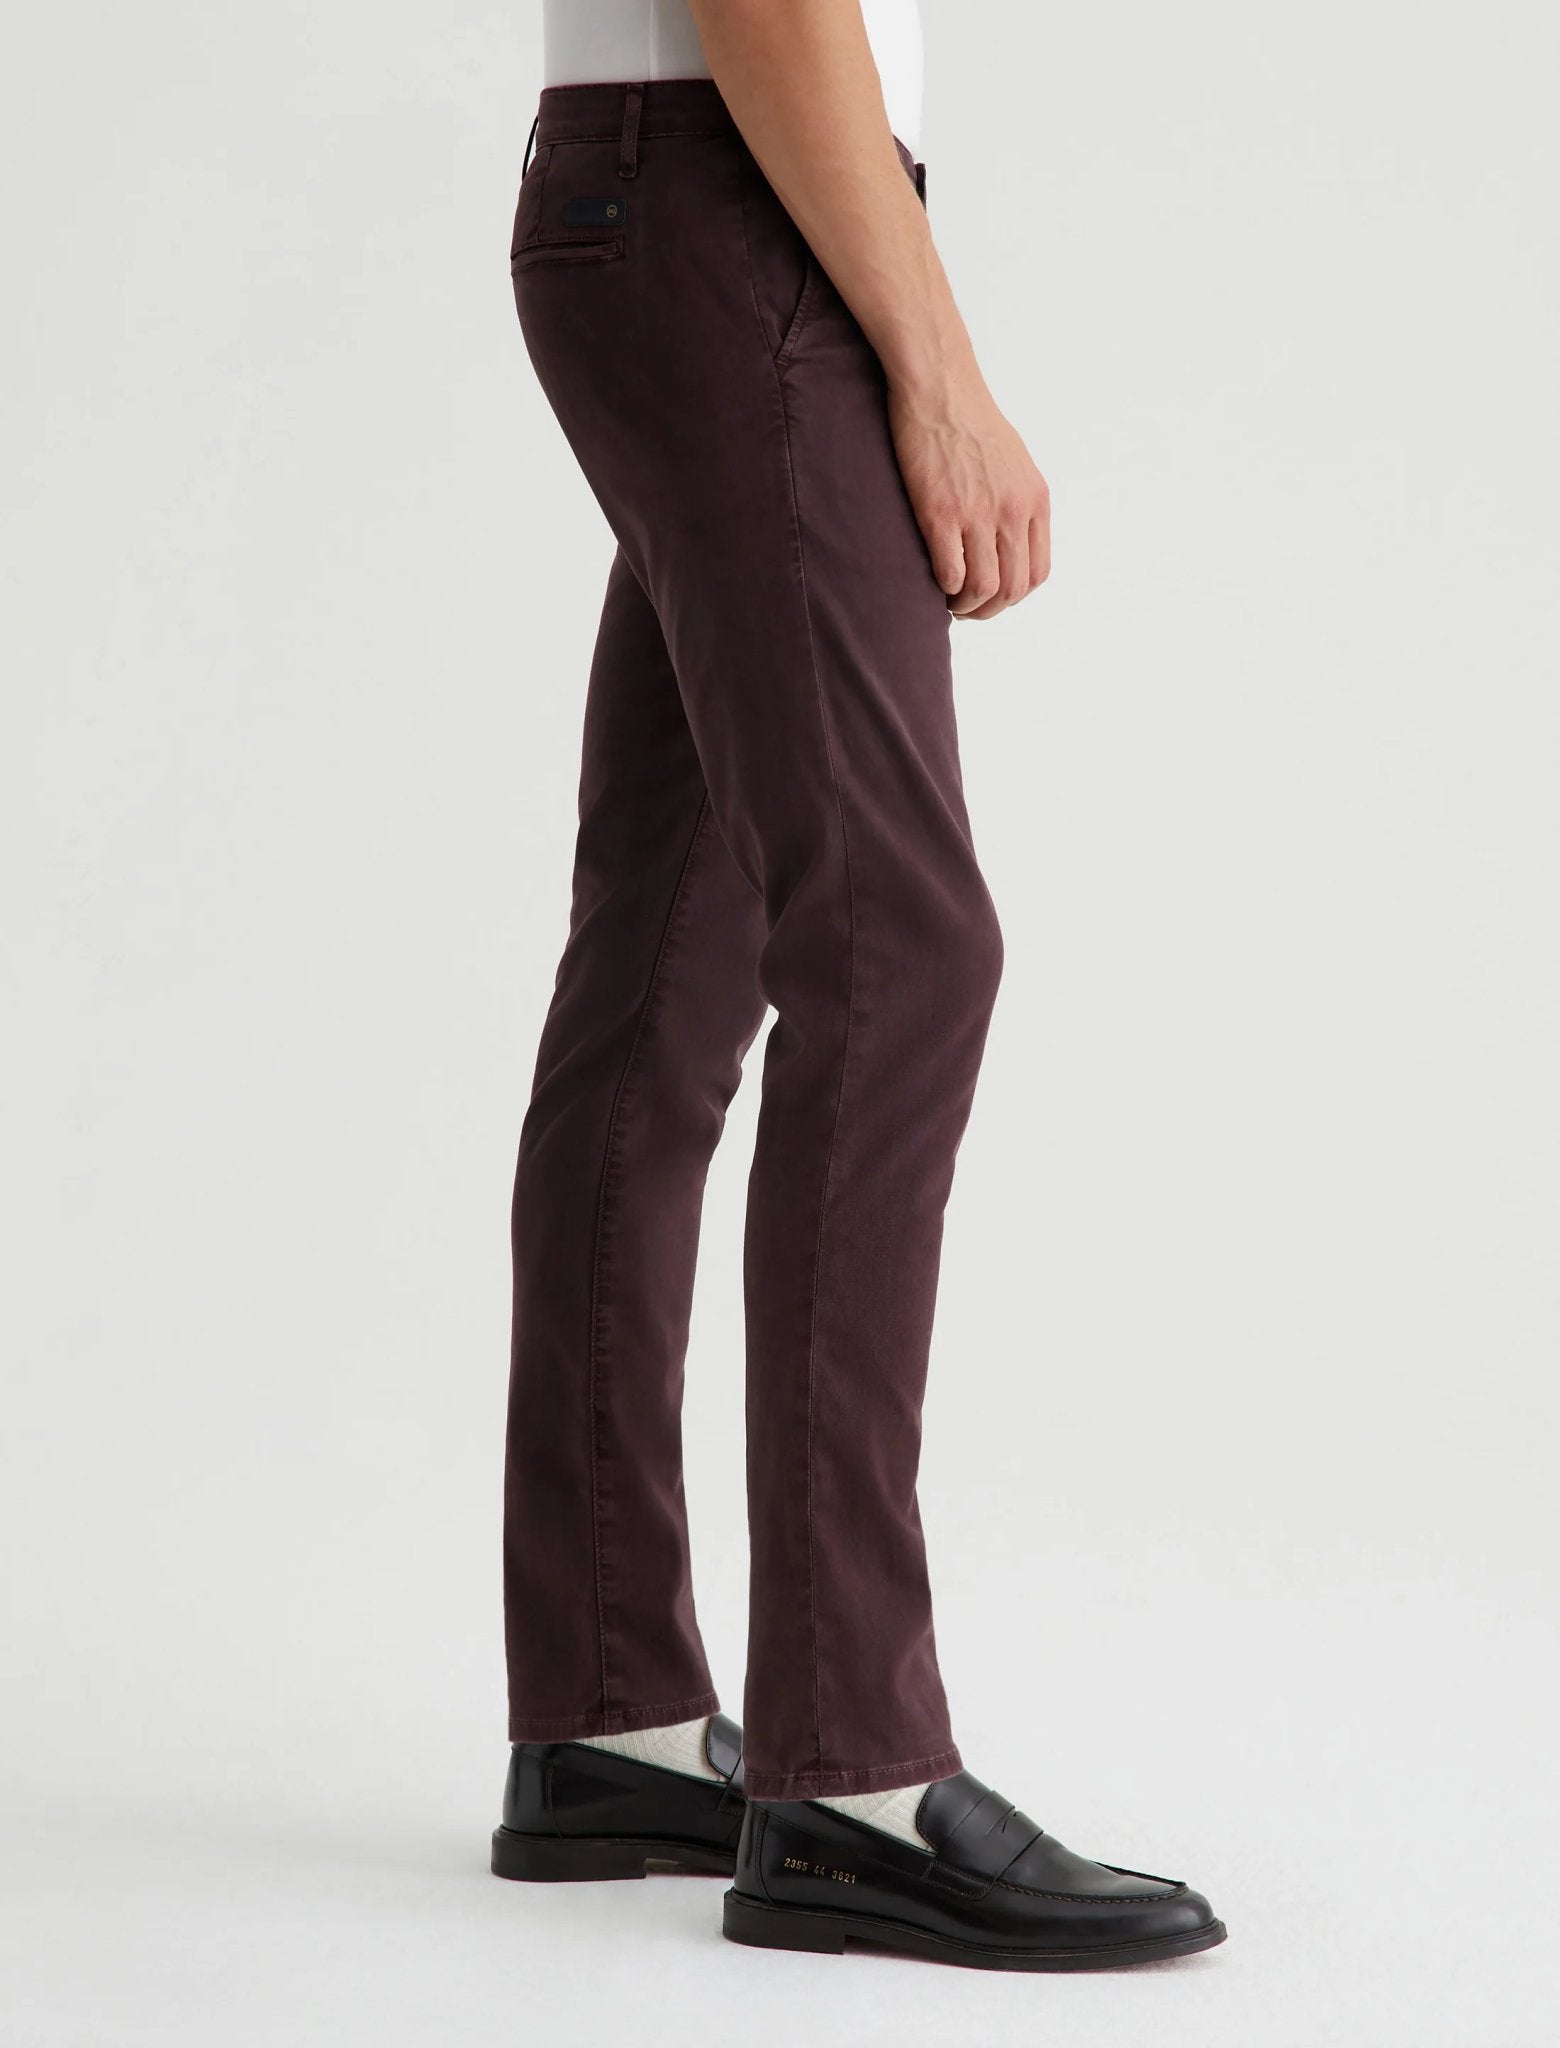 Jamison Slim Tailored Trouser - AG Jeans - Danali - 1912SRT-SLPOIR-30